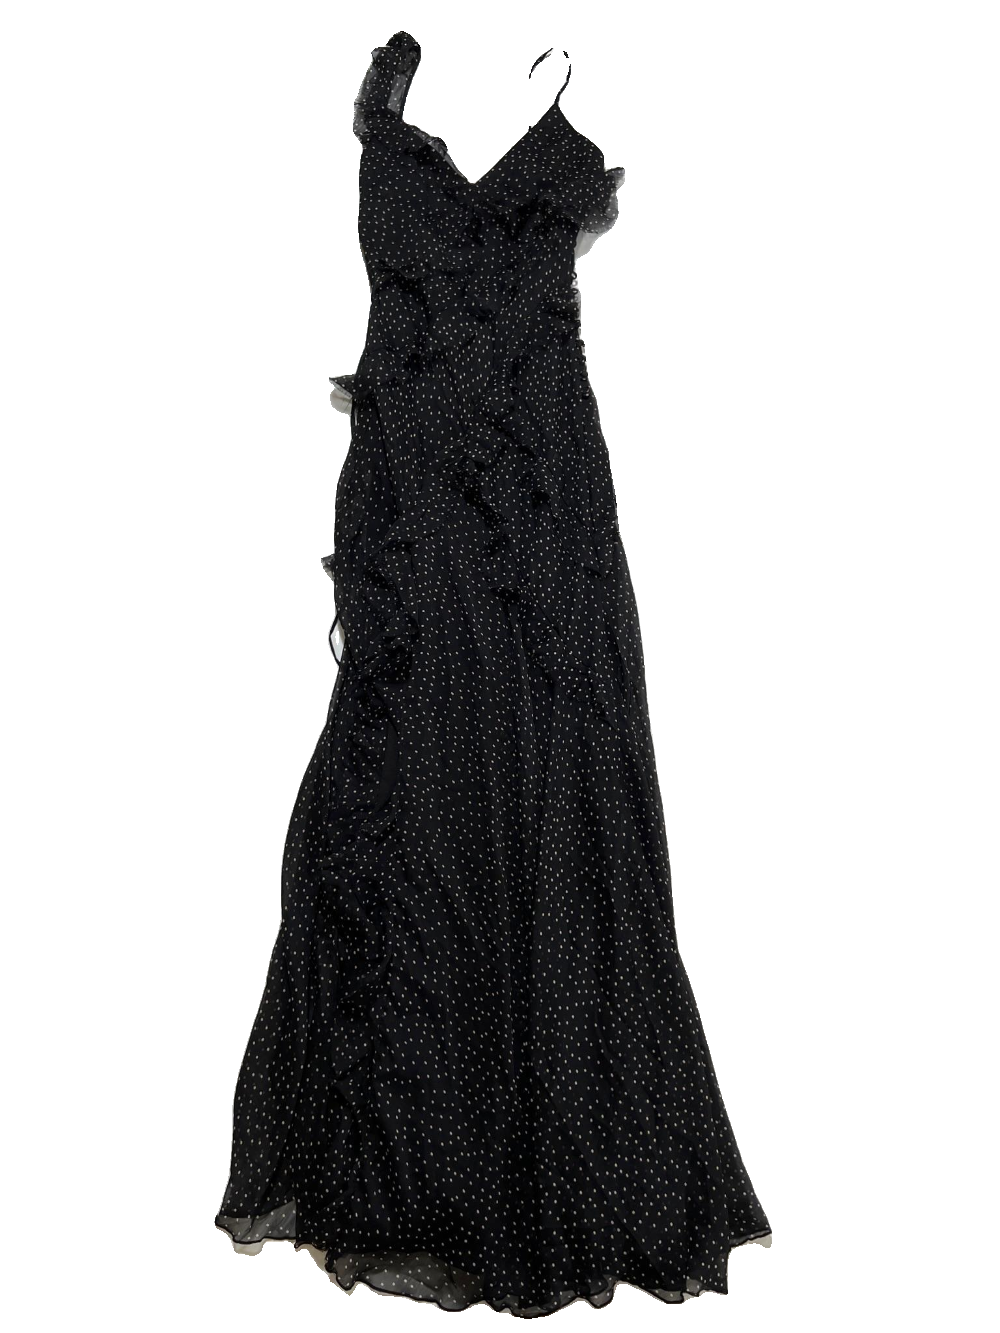 Asos- Black and Tan Polka Dot Ruffle Maxi Dress